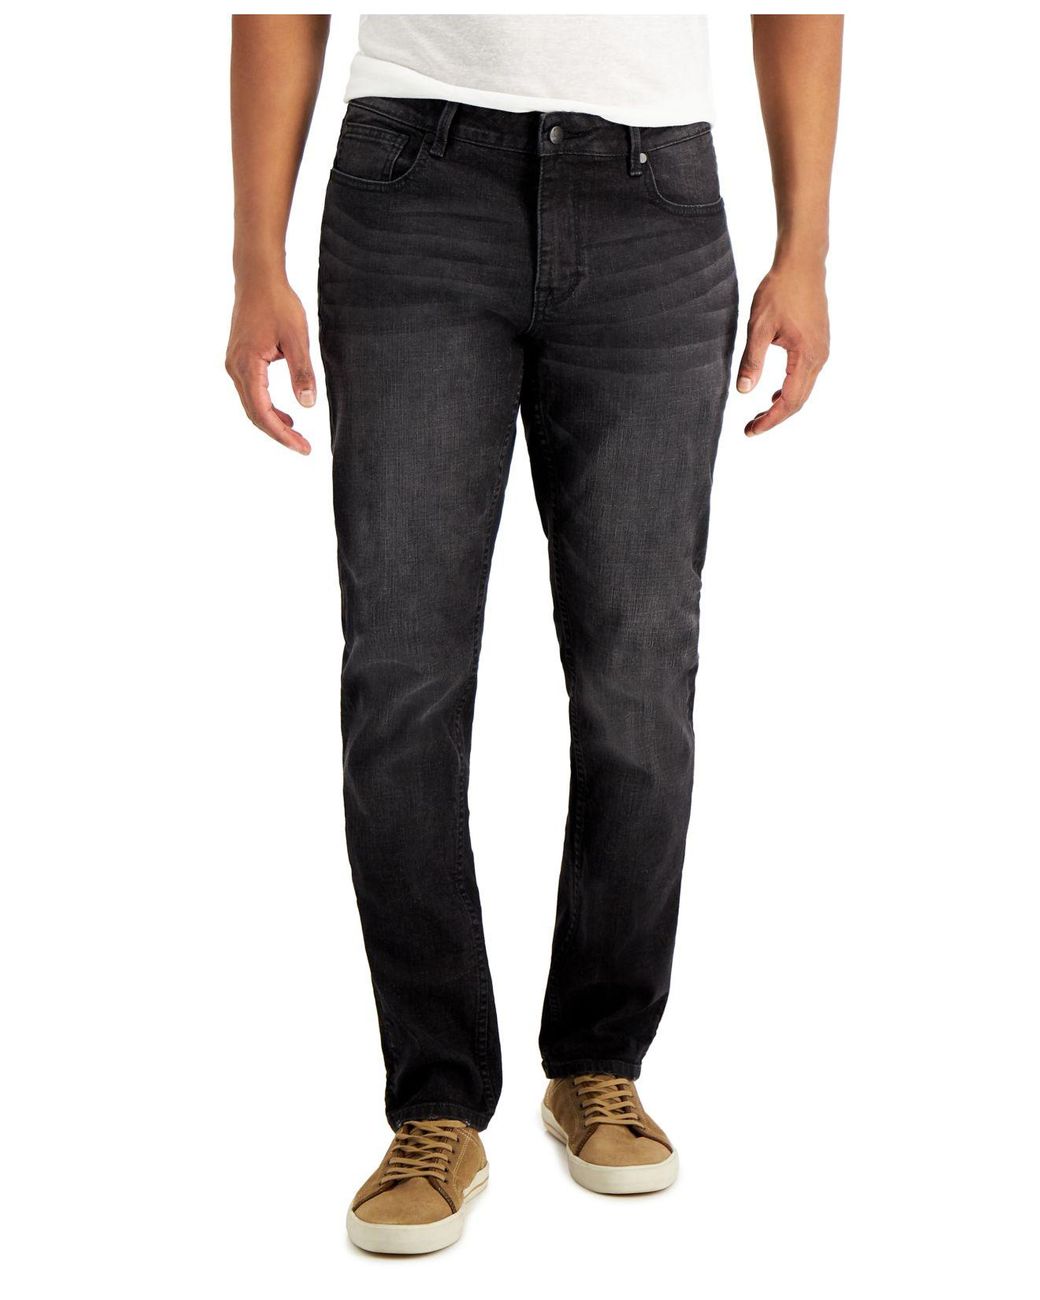 DKNY Bedford Slim, Straight Jeans for Men